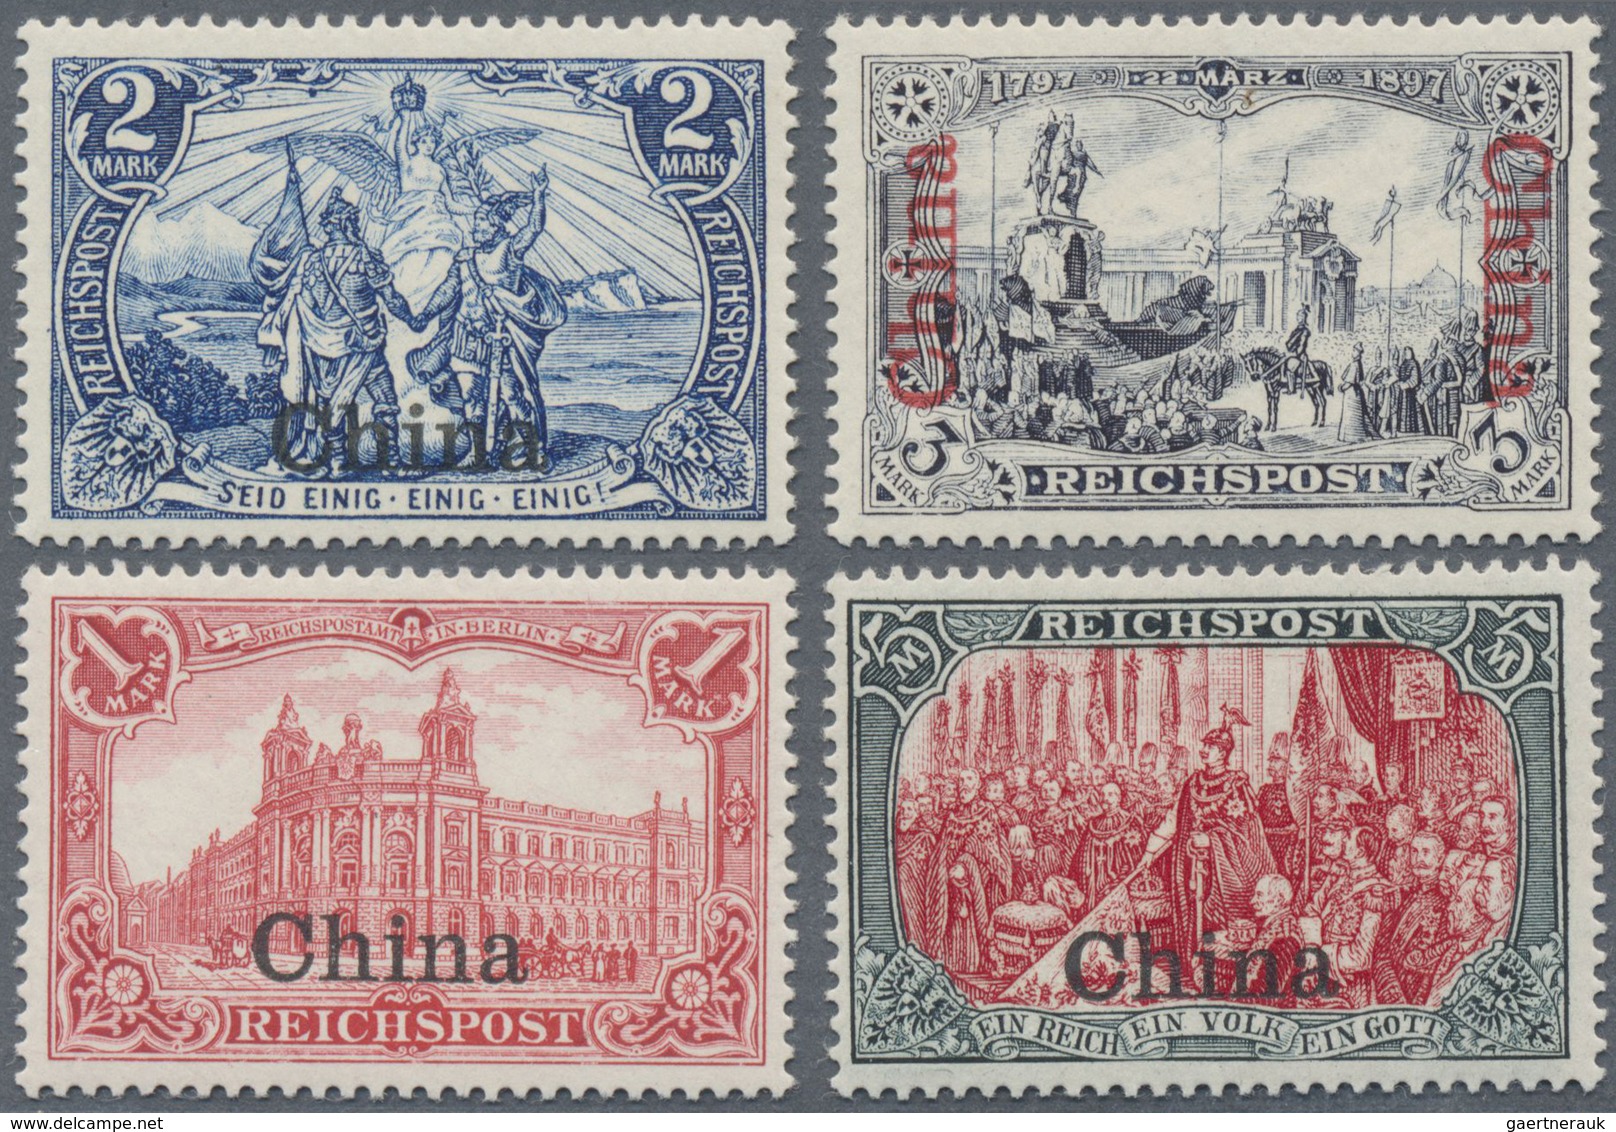 ** Deutsche Post In China: 1901, 1 - 5 Mark Reichspost Mit Überdruck "China", Unsignierte Postfrische L - Chine (bureaux)